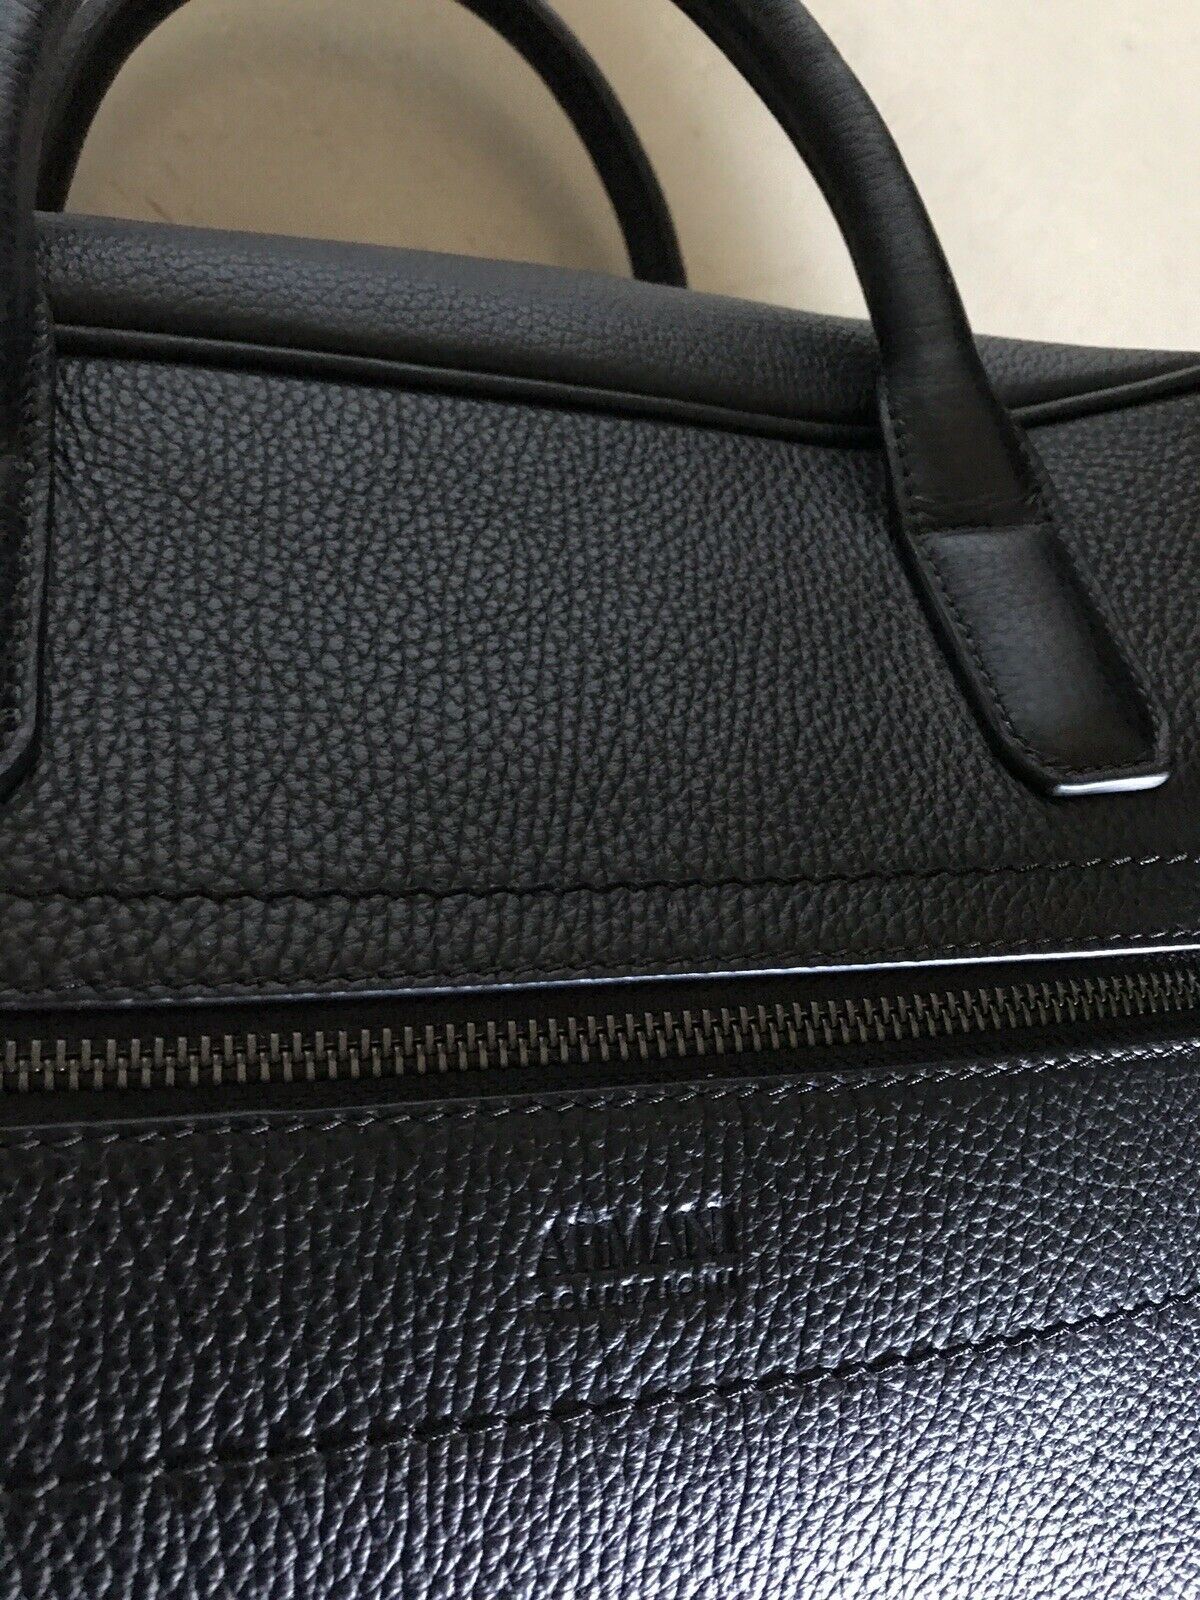 New $1395 Armani Collezioni Mens Leather Briefcase Travel Bag Black